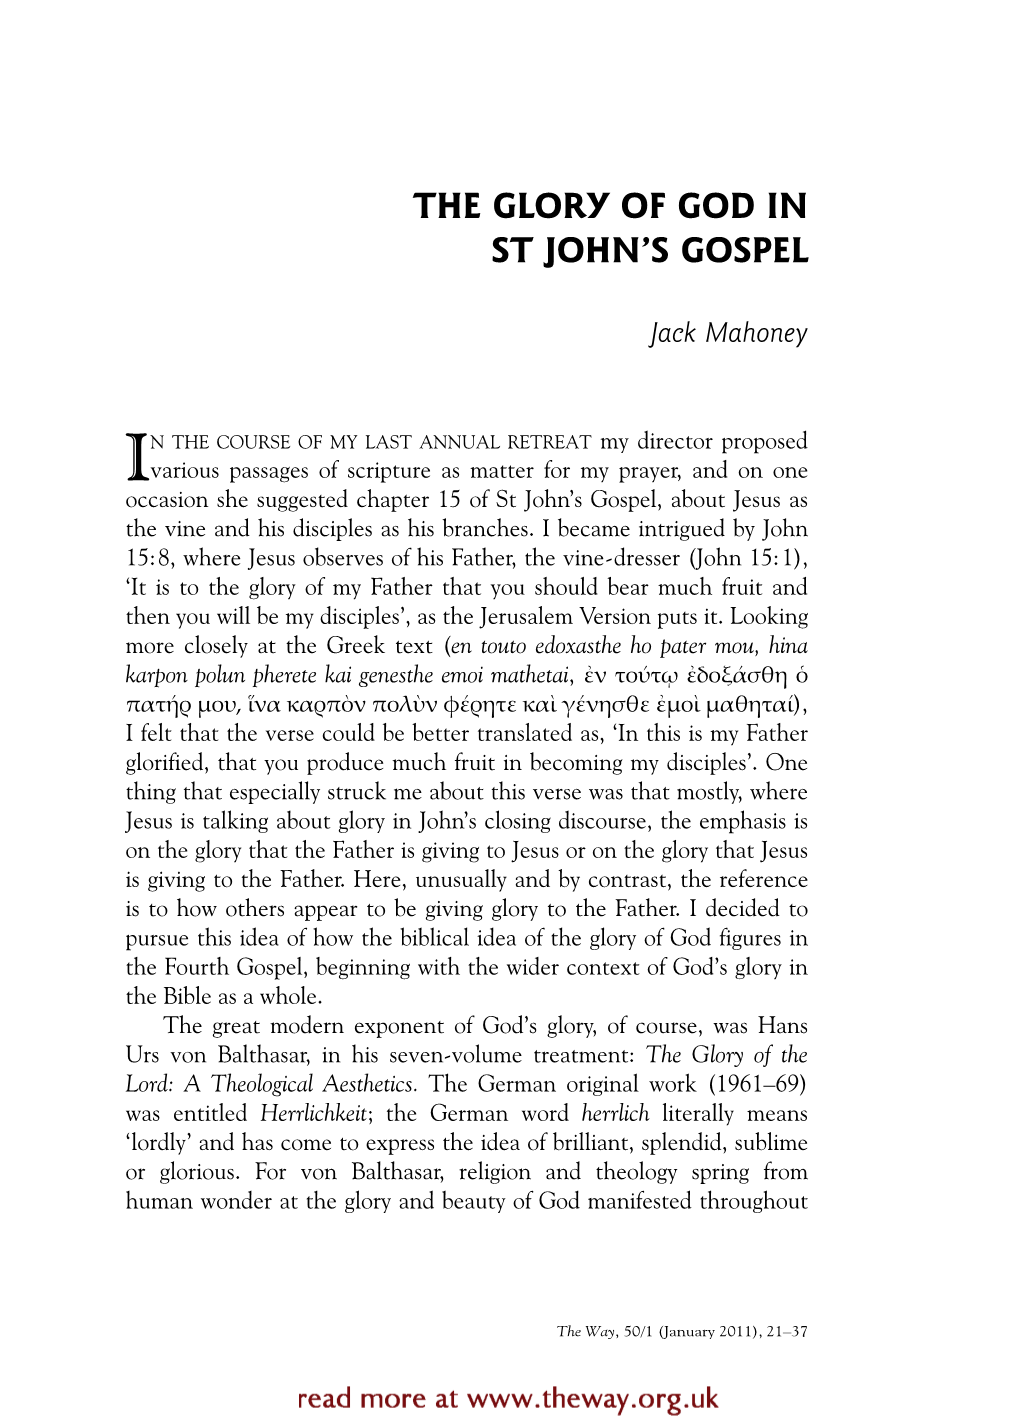 The Glory of God in St John's Gospel